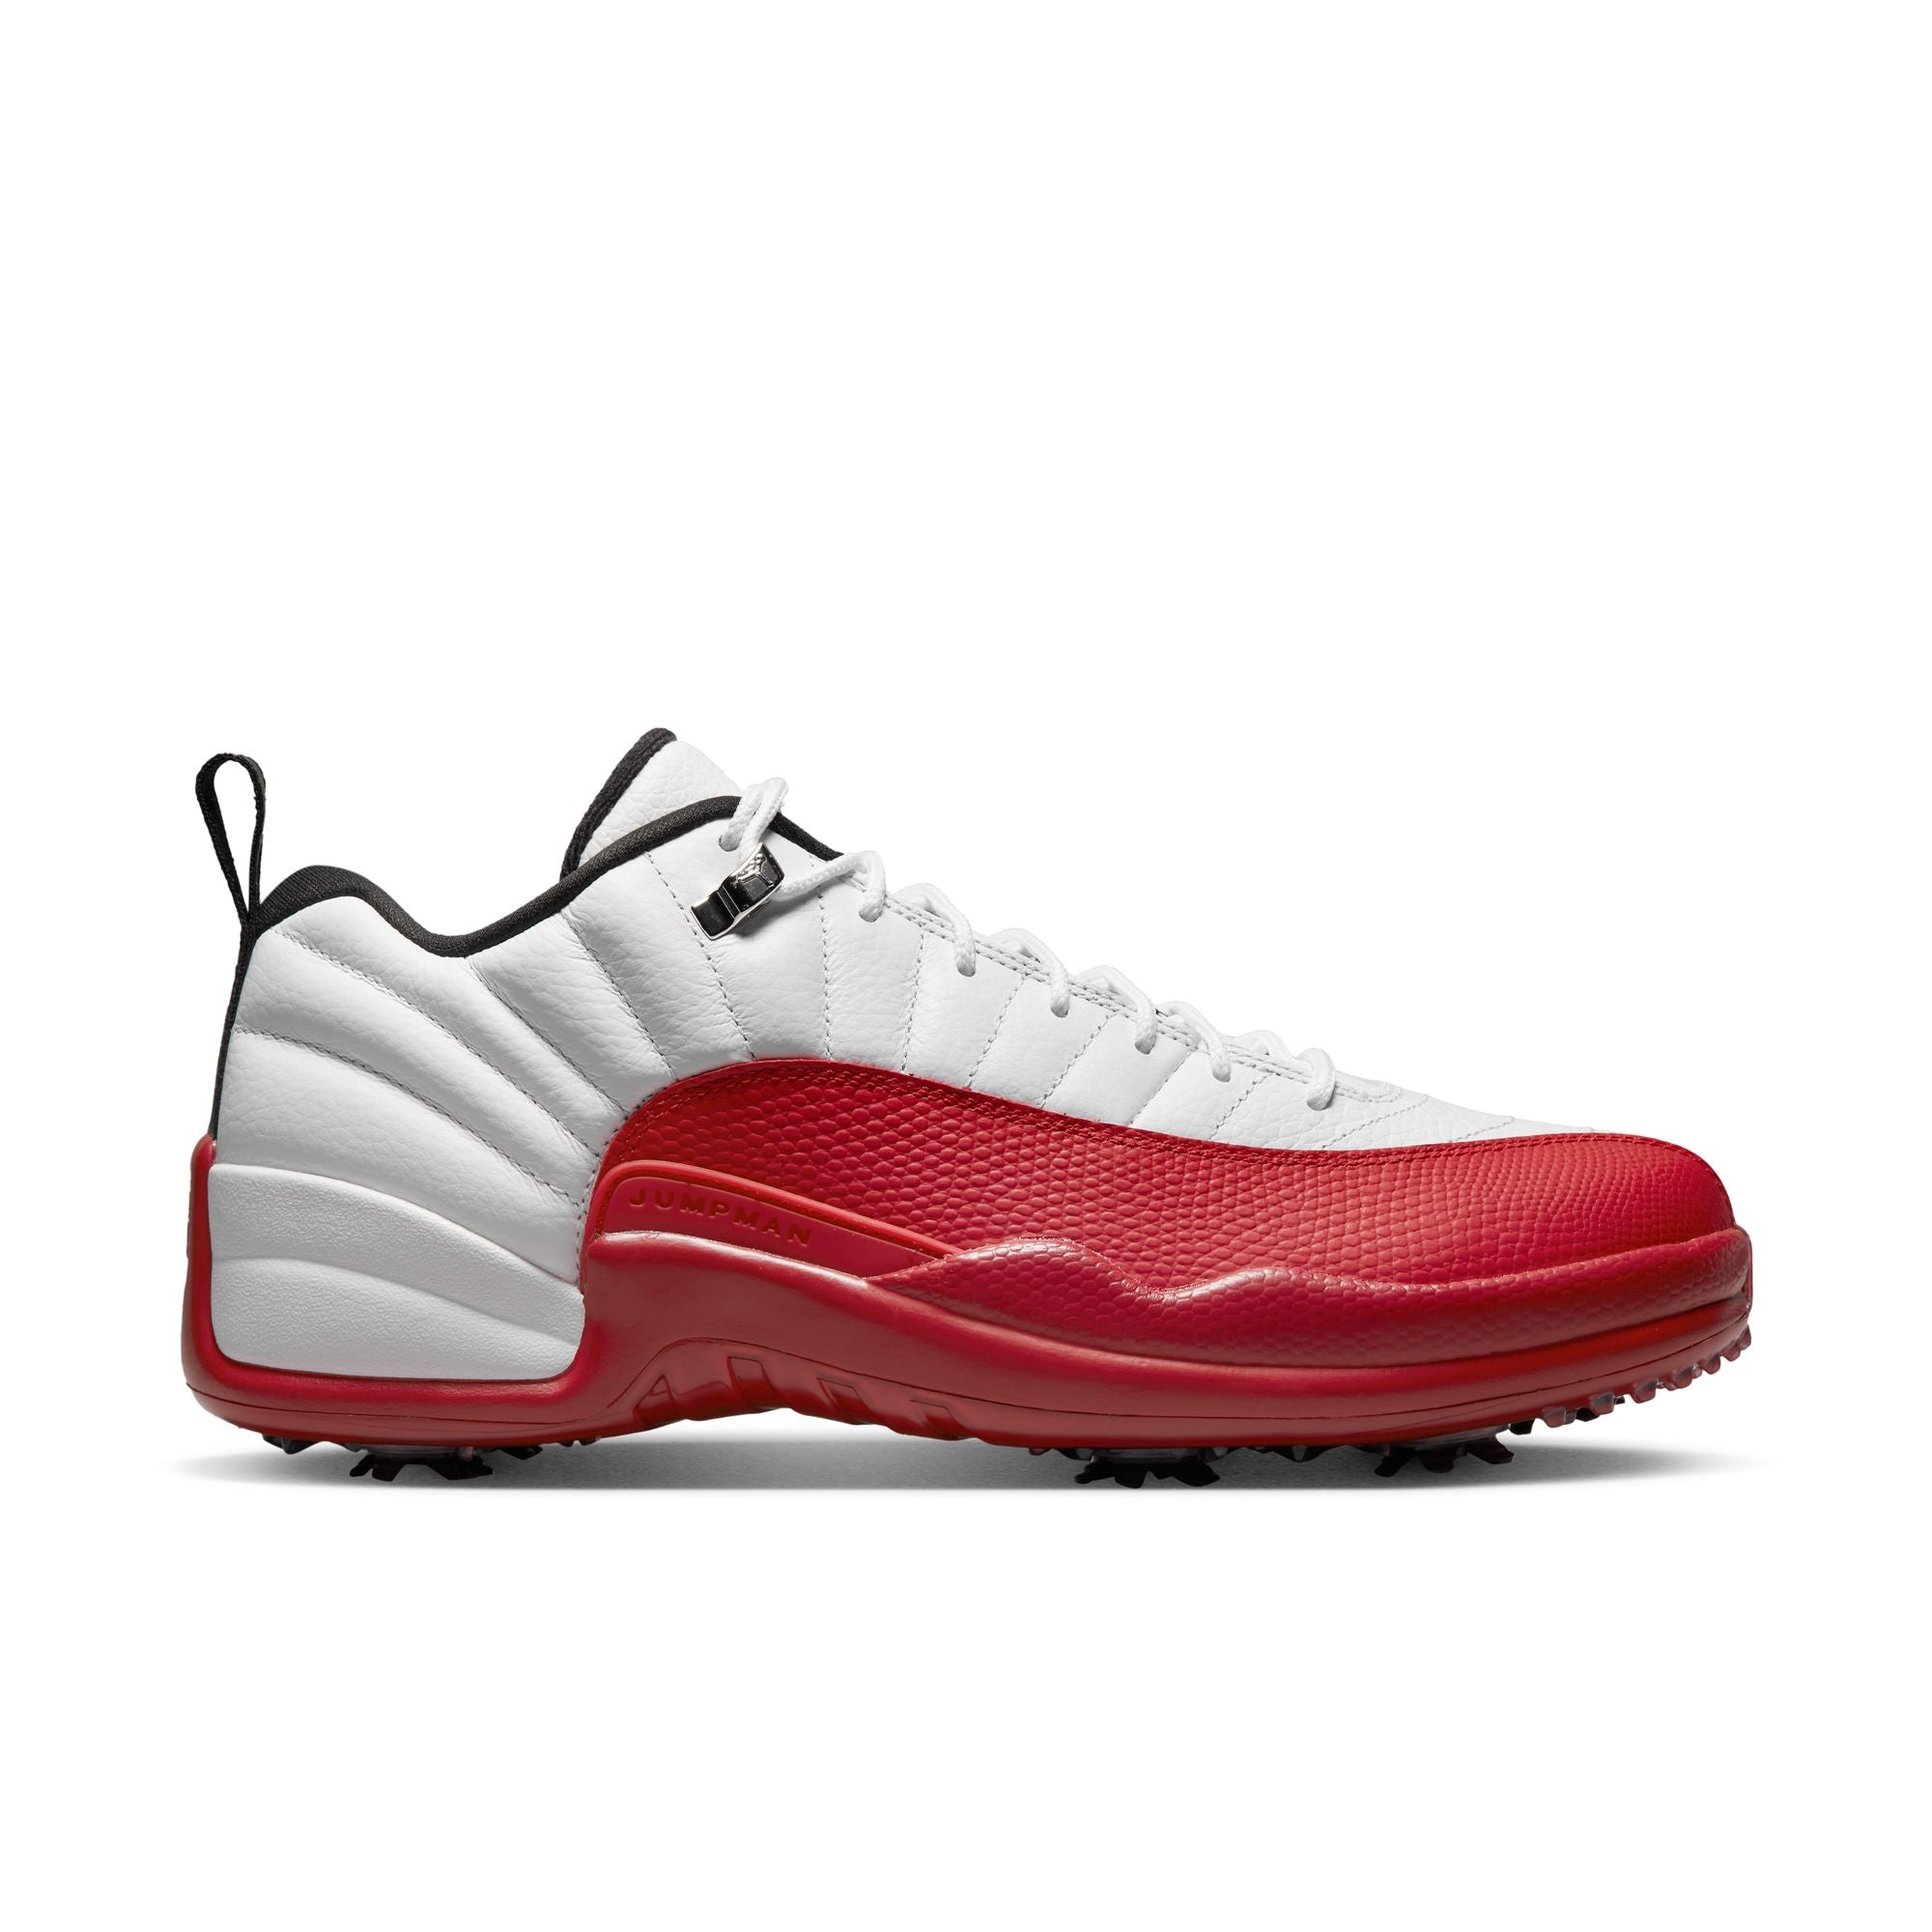 Michael Jordan Air Jordan 12 Low Golf Shoes